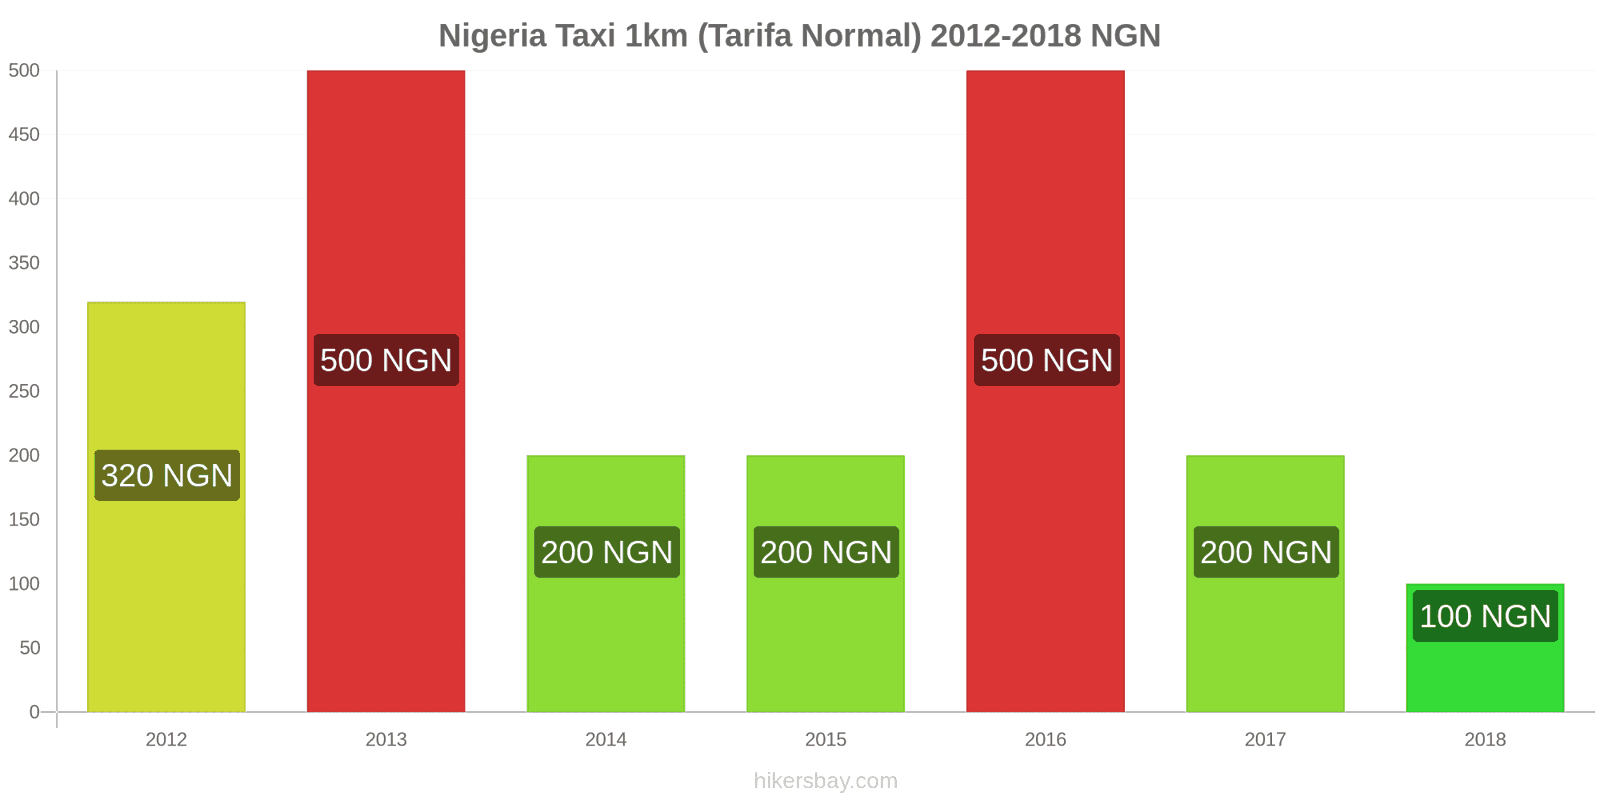 Nigeria cambios de precios Taxi 1km (tarifa normal) hikersbay.com